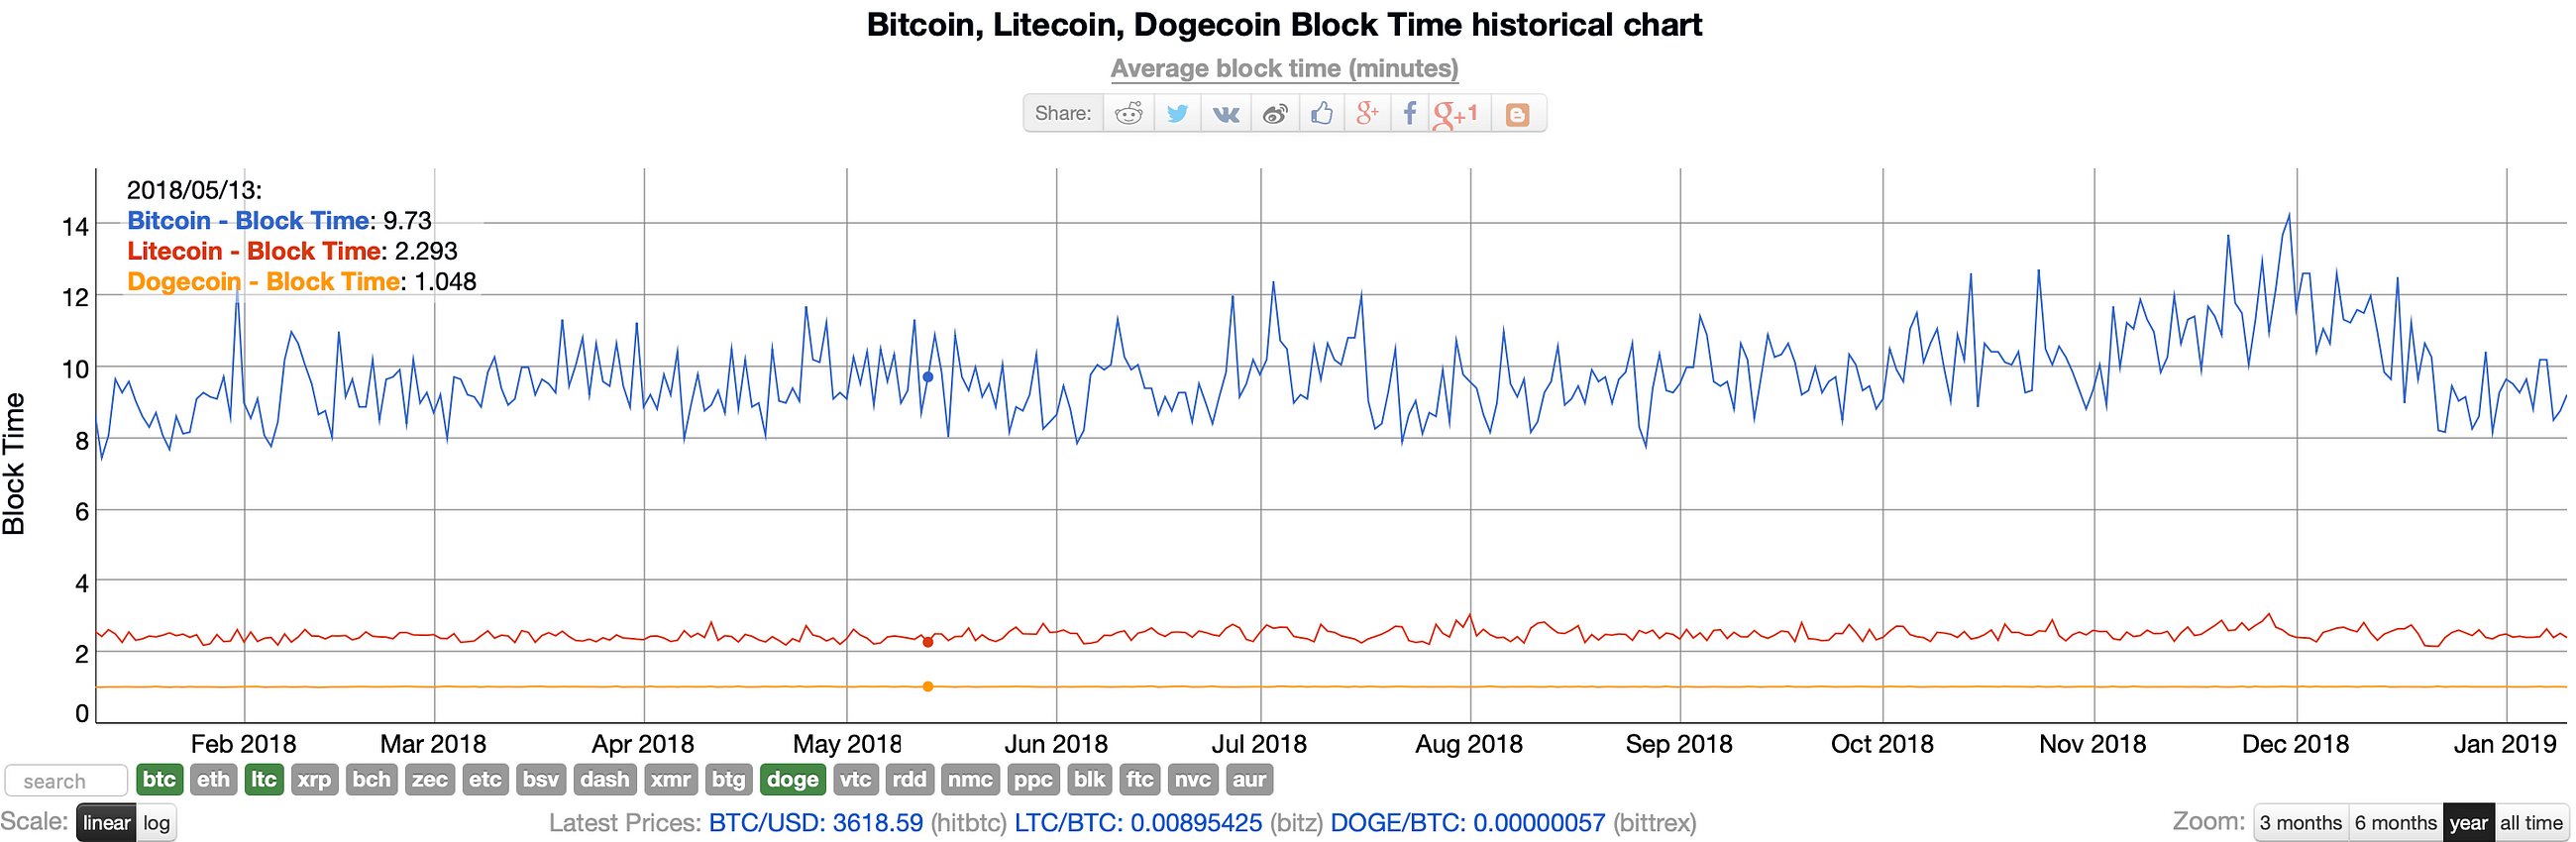 Litecoin Chart